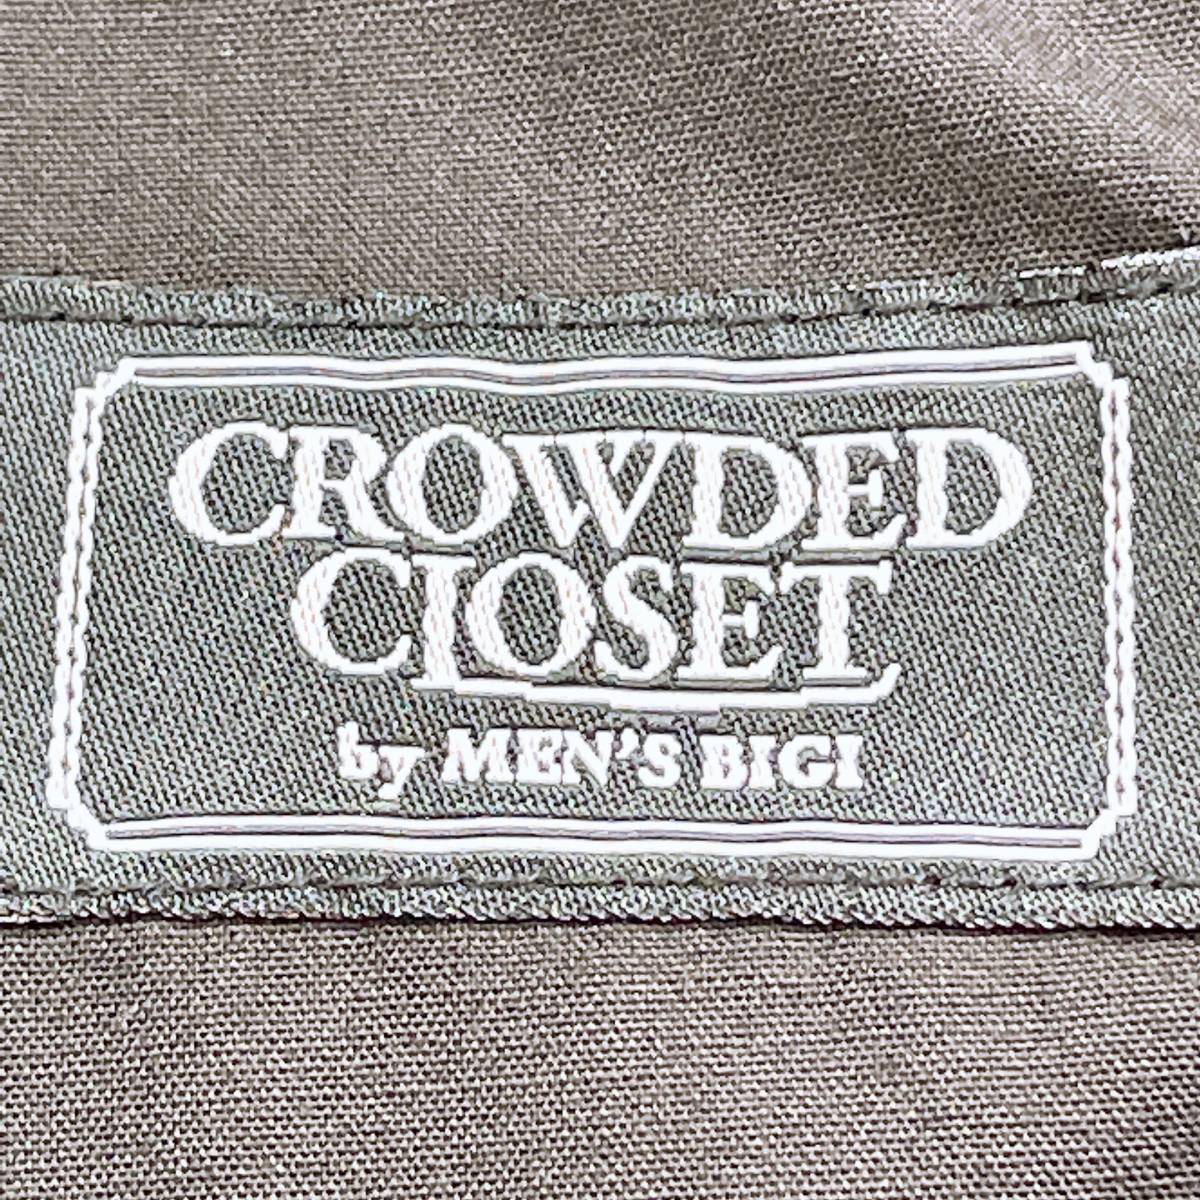 メンズ02 CROWDED CLOSET by MEN'S BIGI ボトムス ネイビー パンツ シンプル カジュアル クラウデッドクローゼット メンズビギ【14416】